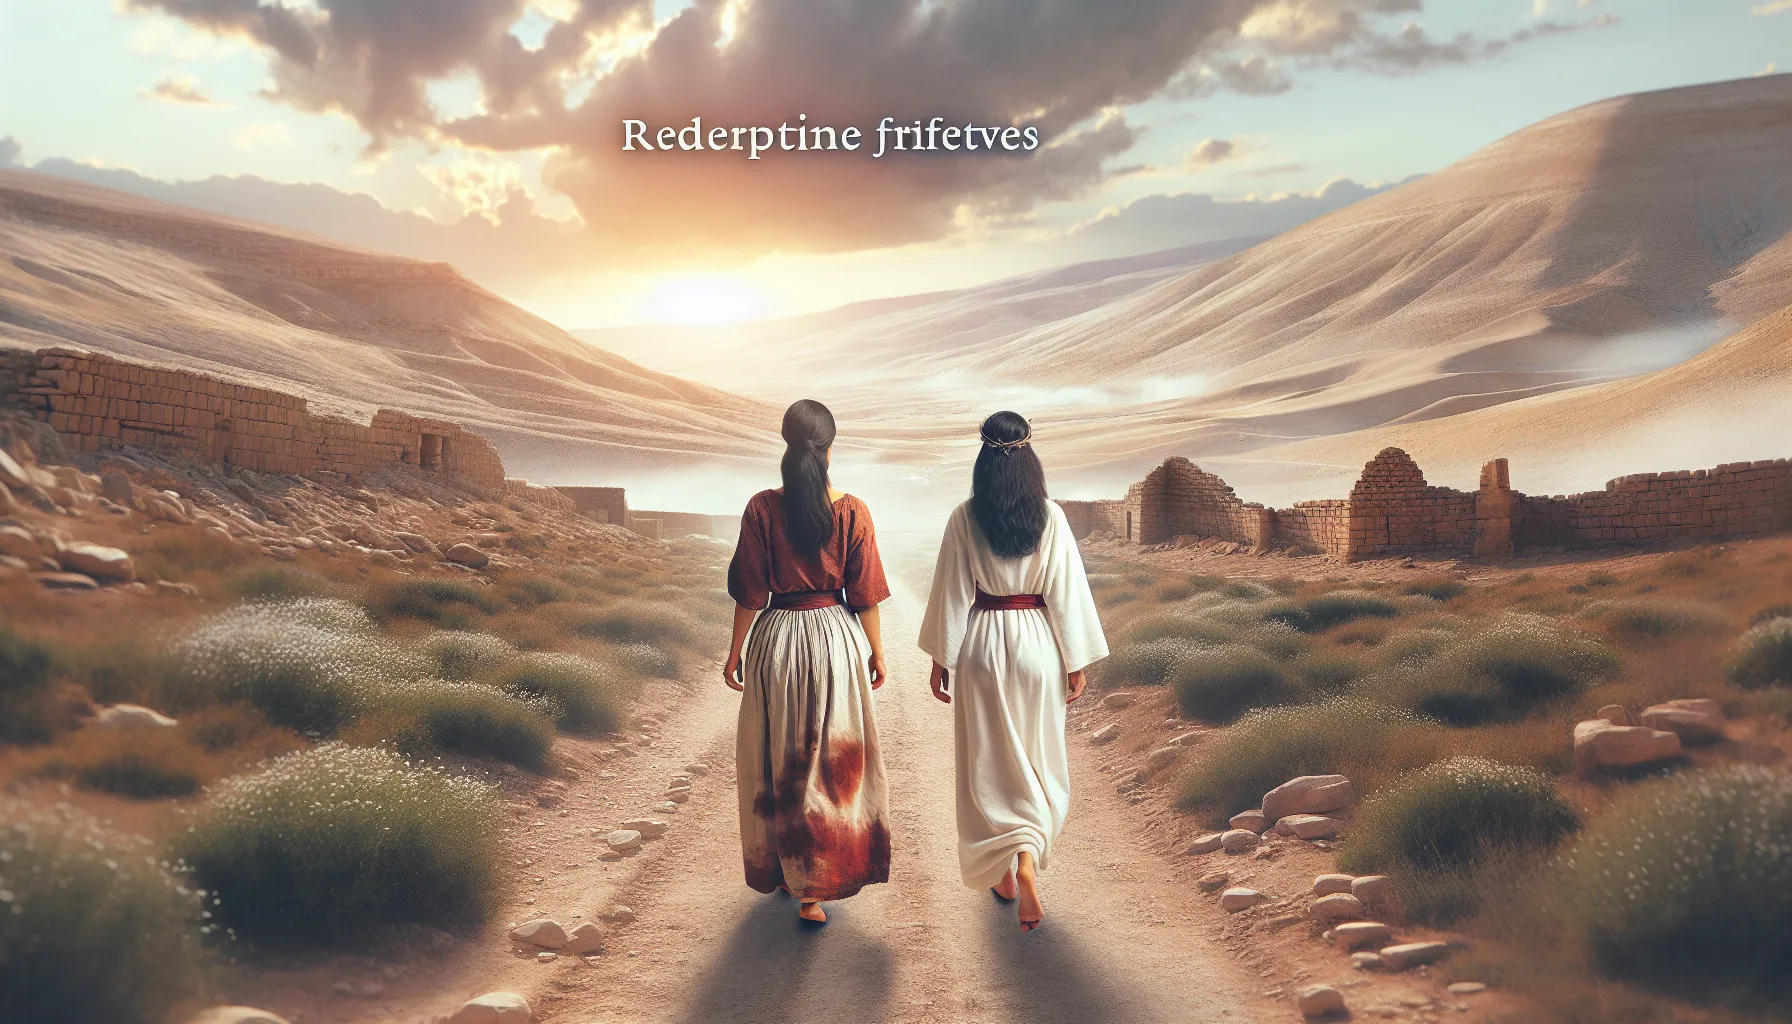 Dos mujeres caminando por un camino polvoriento en la antigua Judea, simbolizando la redención y el perdón divino hacia las prostitutas mencionadas en la Biblia.